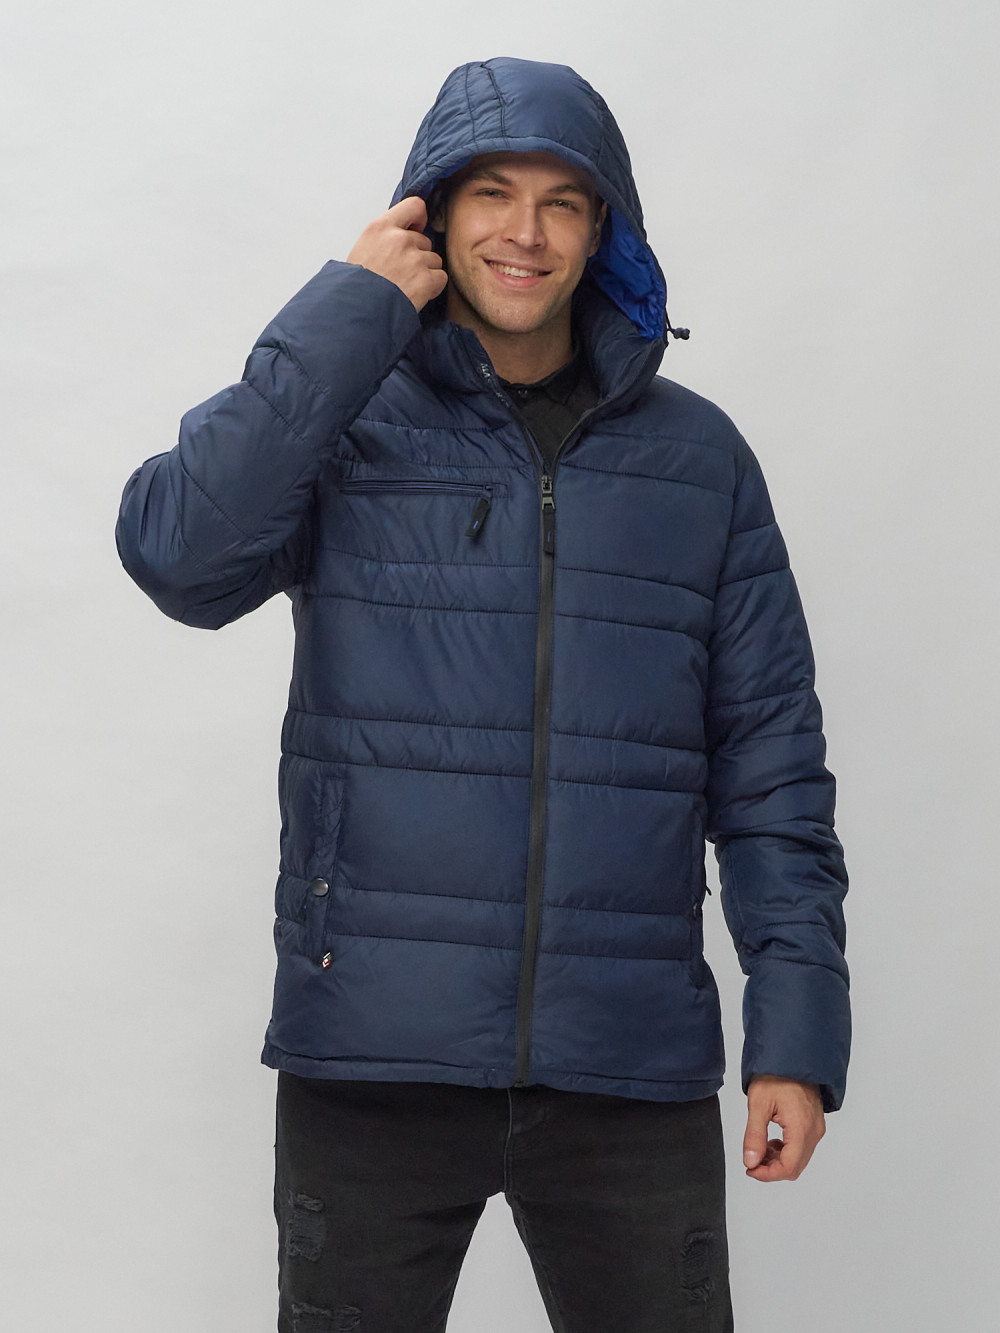 Купить куртку мужскую спортивную весеннюю оптом от производителя недорого в Москве 62175TS 1